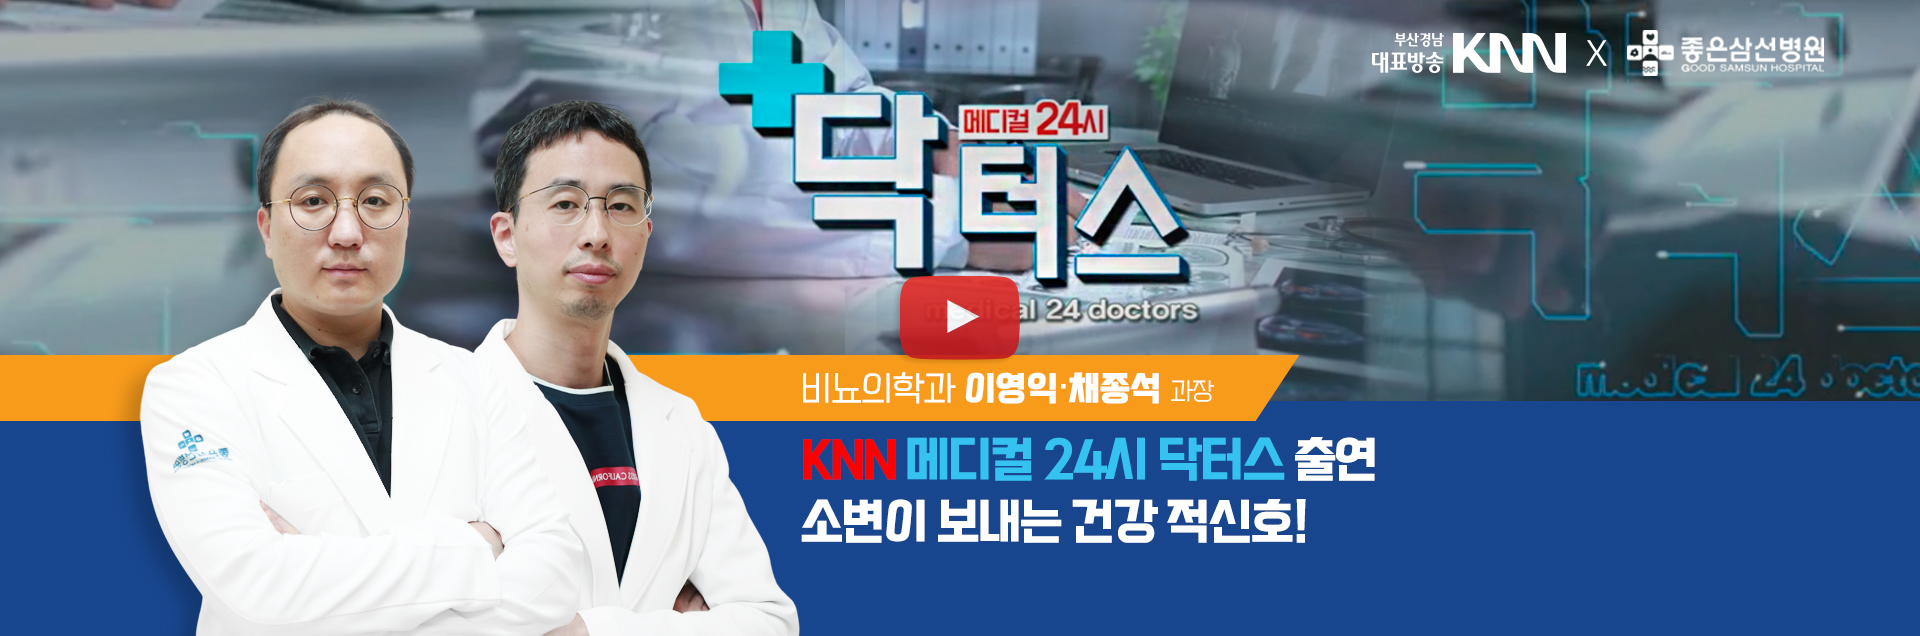 비뇨의학과 이영익·채종석 과장 KNN 메디컬 24시 닥터스 출연